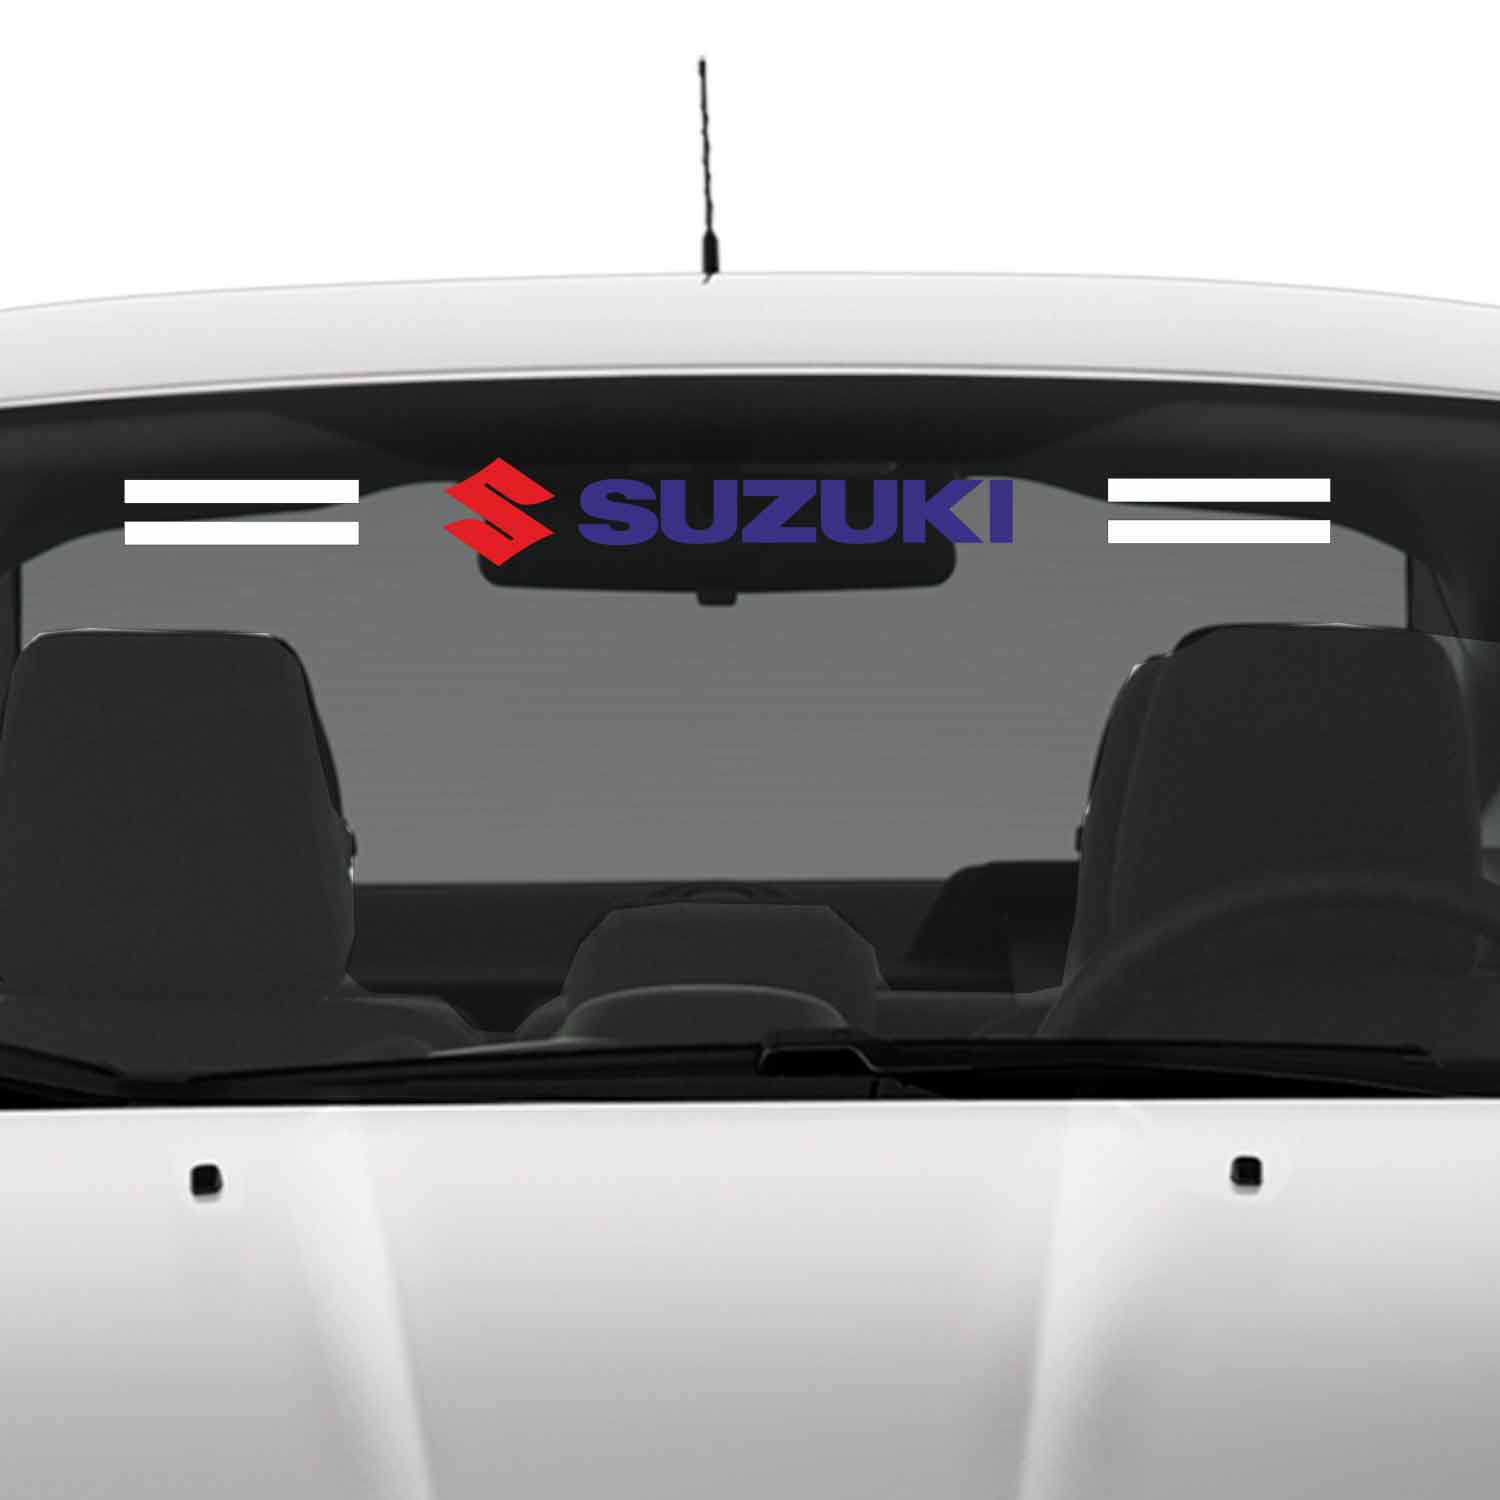 Suzuki cam sticker - Suzuki Ön Arka Cam Uyumlu Sticker